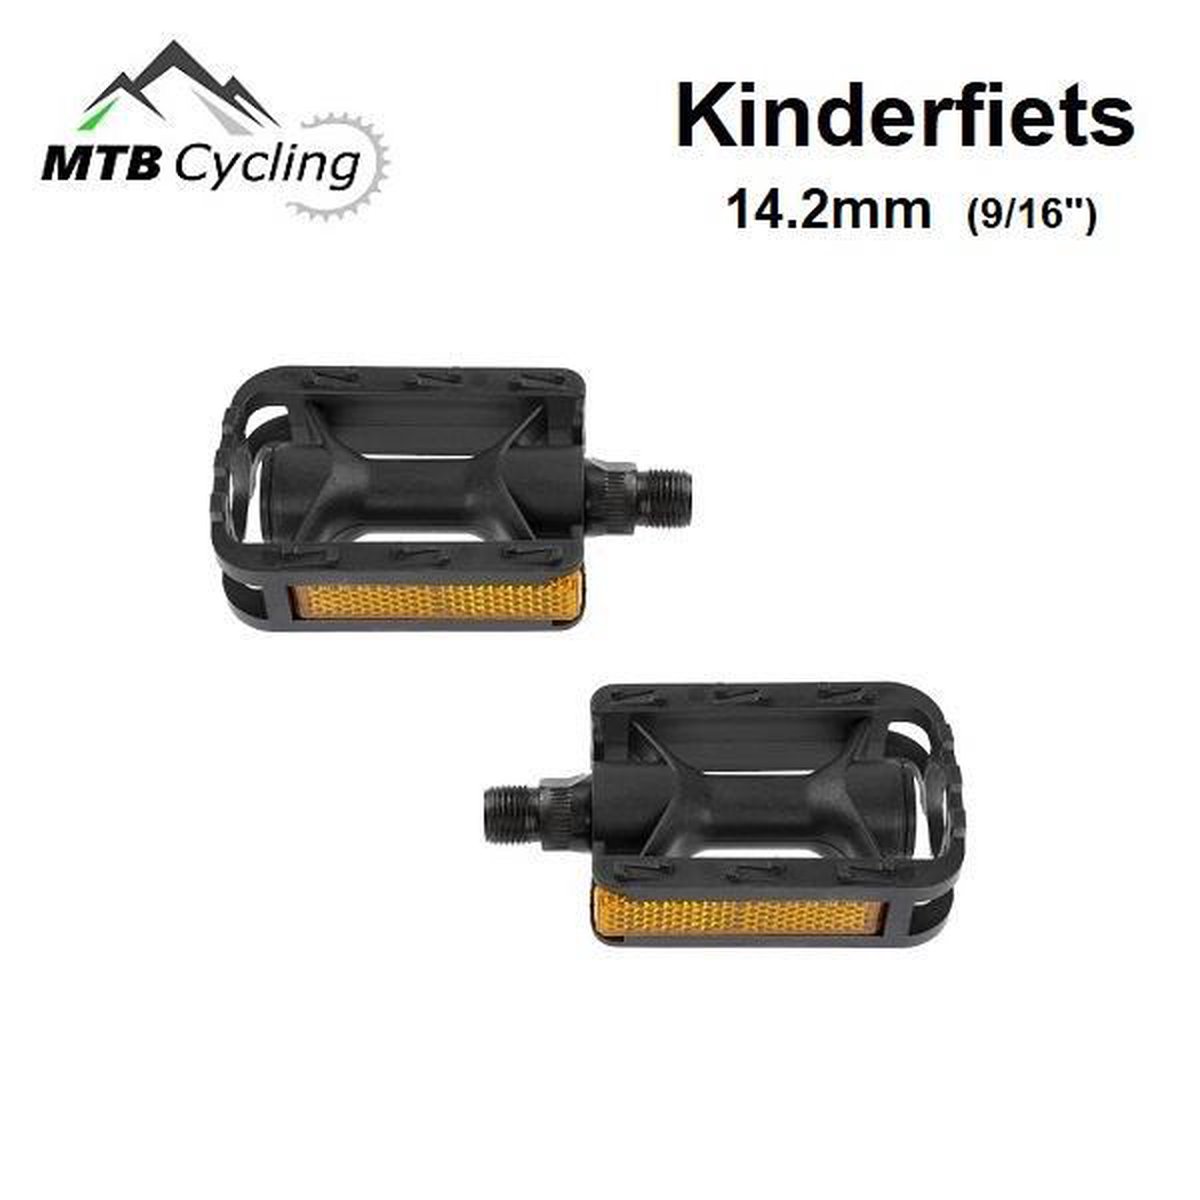 9/16 inch Kinderfiets pedalen - Anti slip - Trappers voor kinder fiets met  reflector -... | bol.com